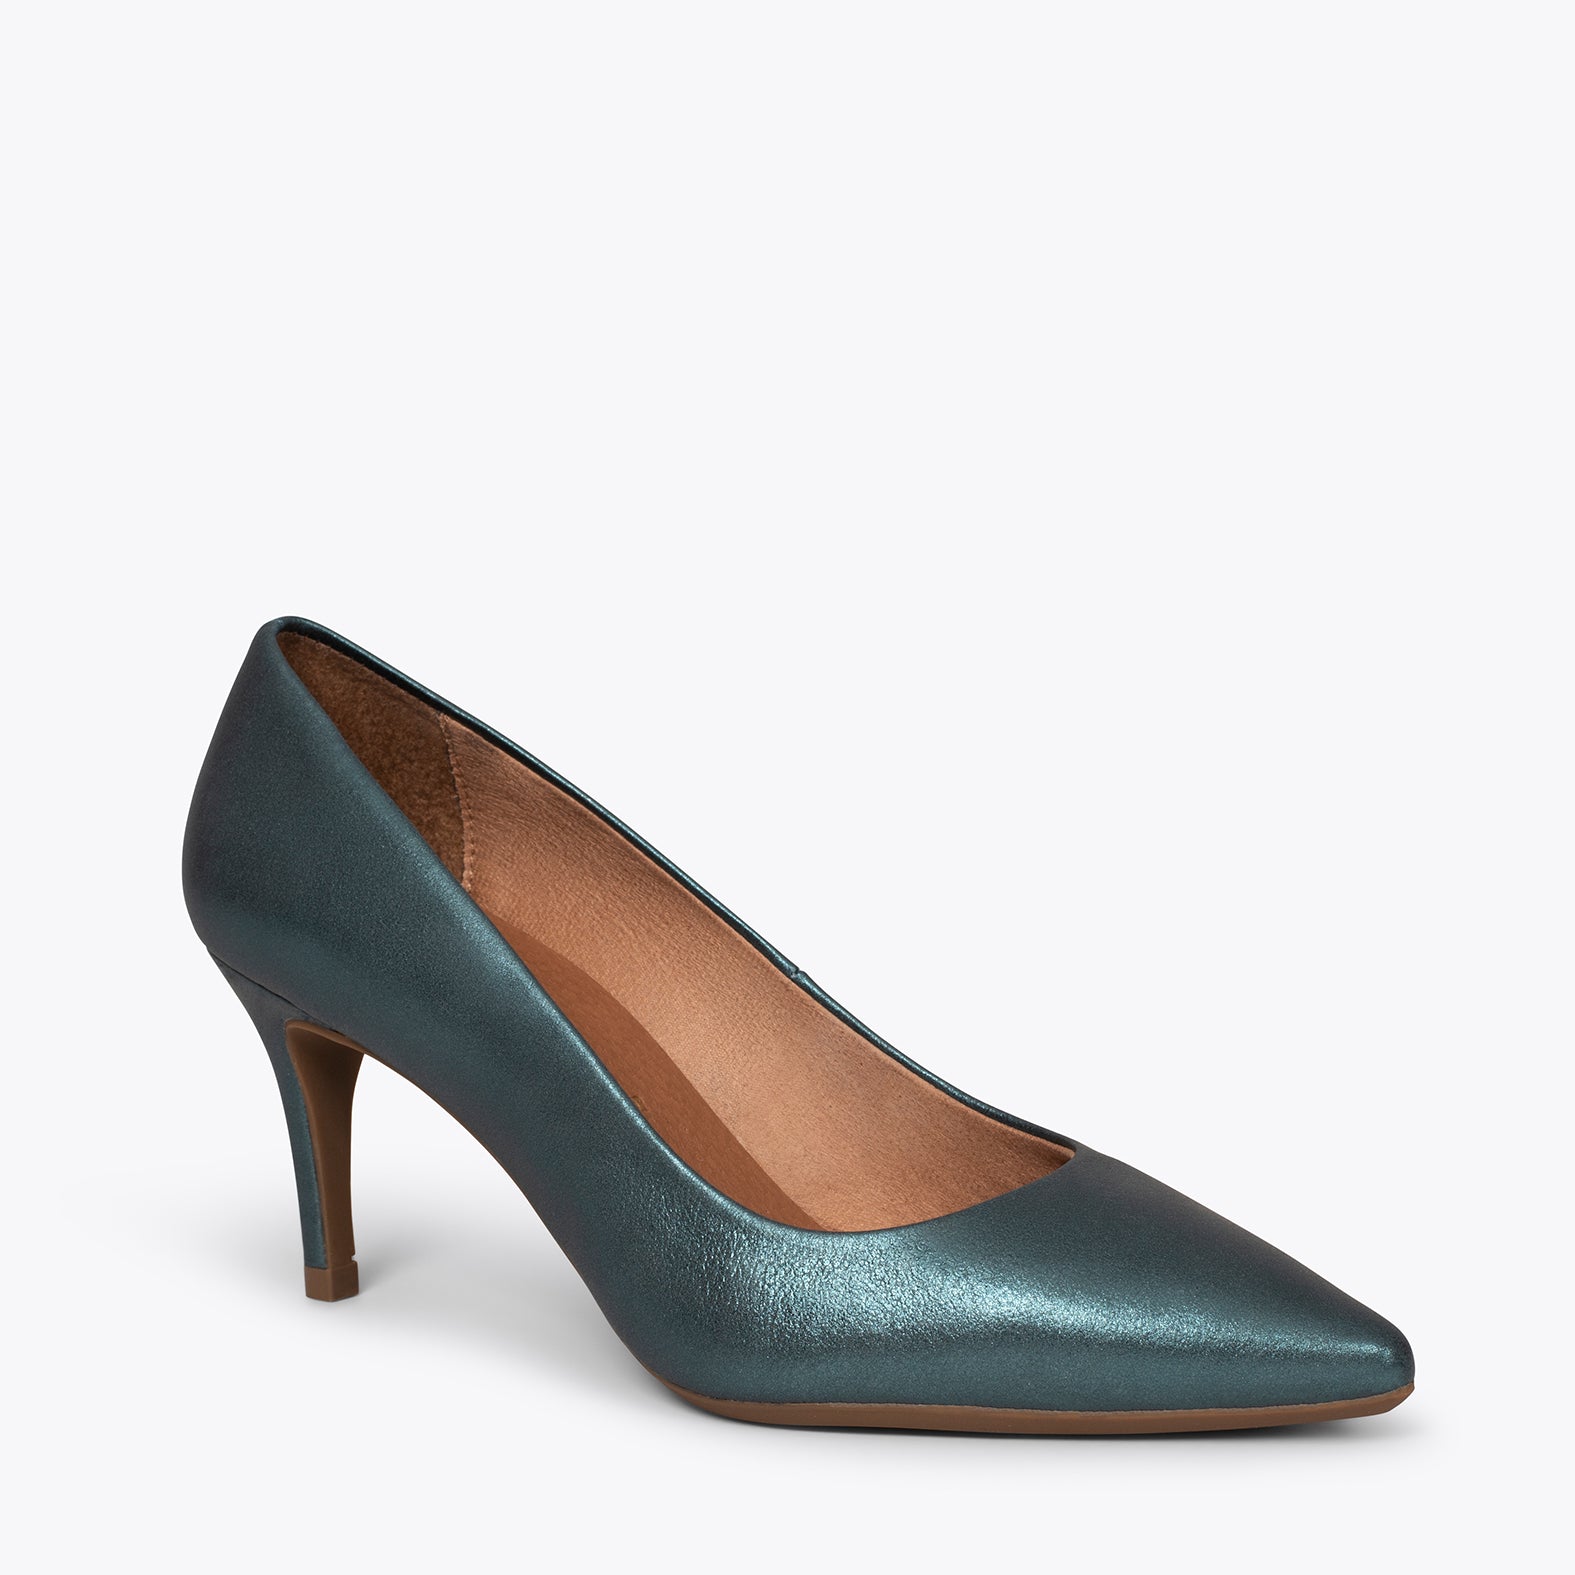 STILETTO – TEAL stiletto mid heel